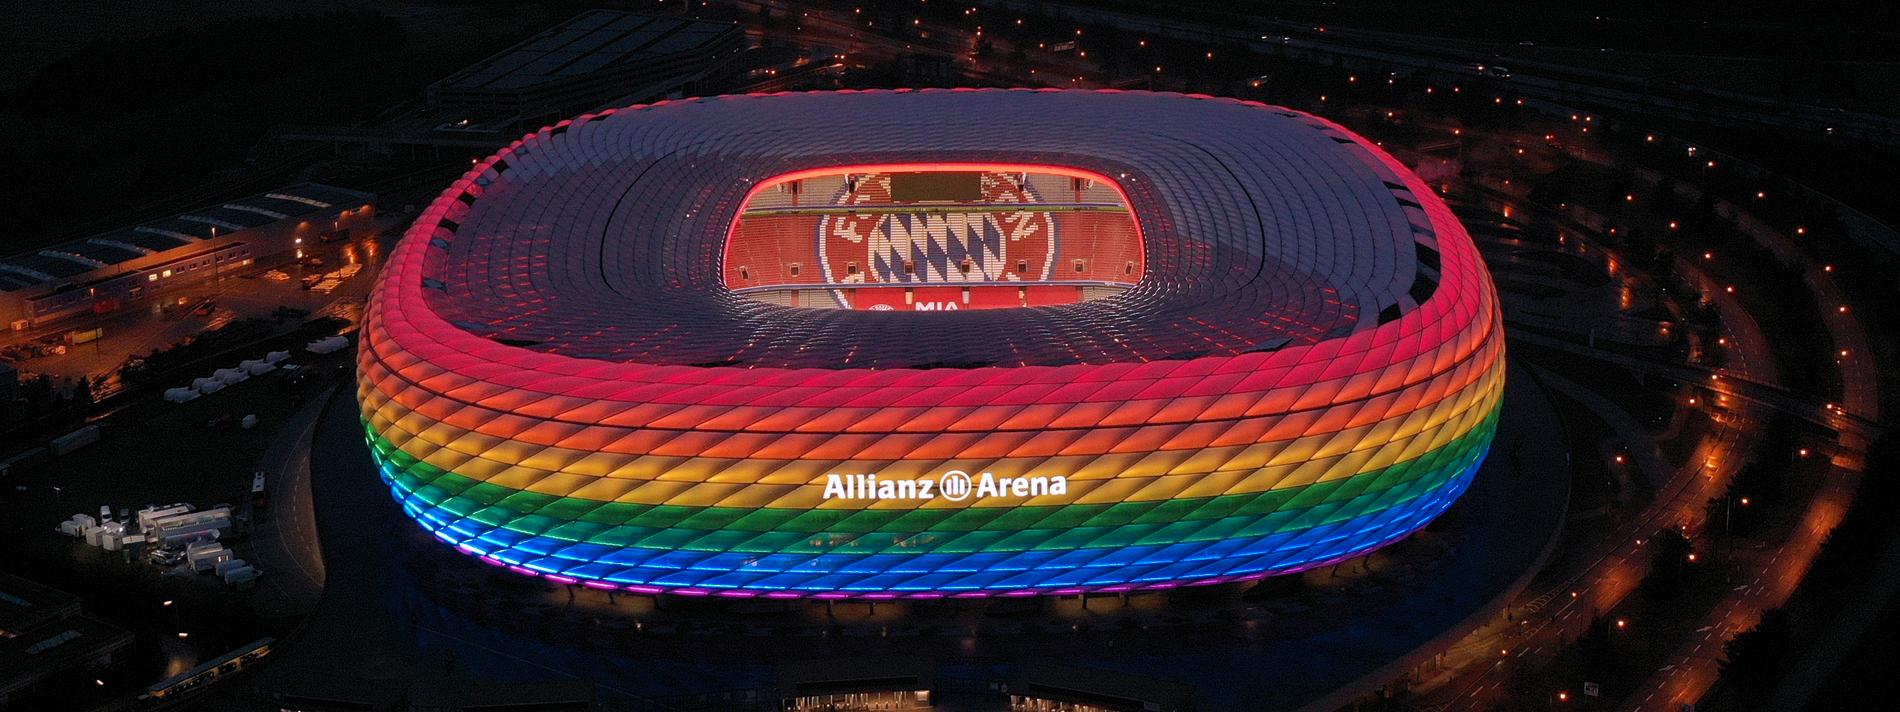 Arrangören ville lysa upp hela Allianz Arena i regnbågens färger till den avslutande gruppspelsmatchen mellan Tyskland och Ungern men fick nej av Uefa.